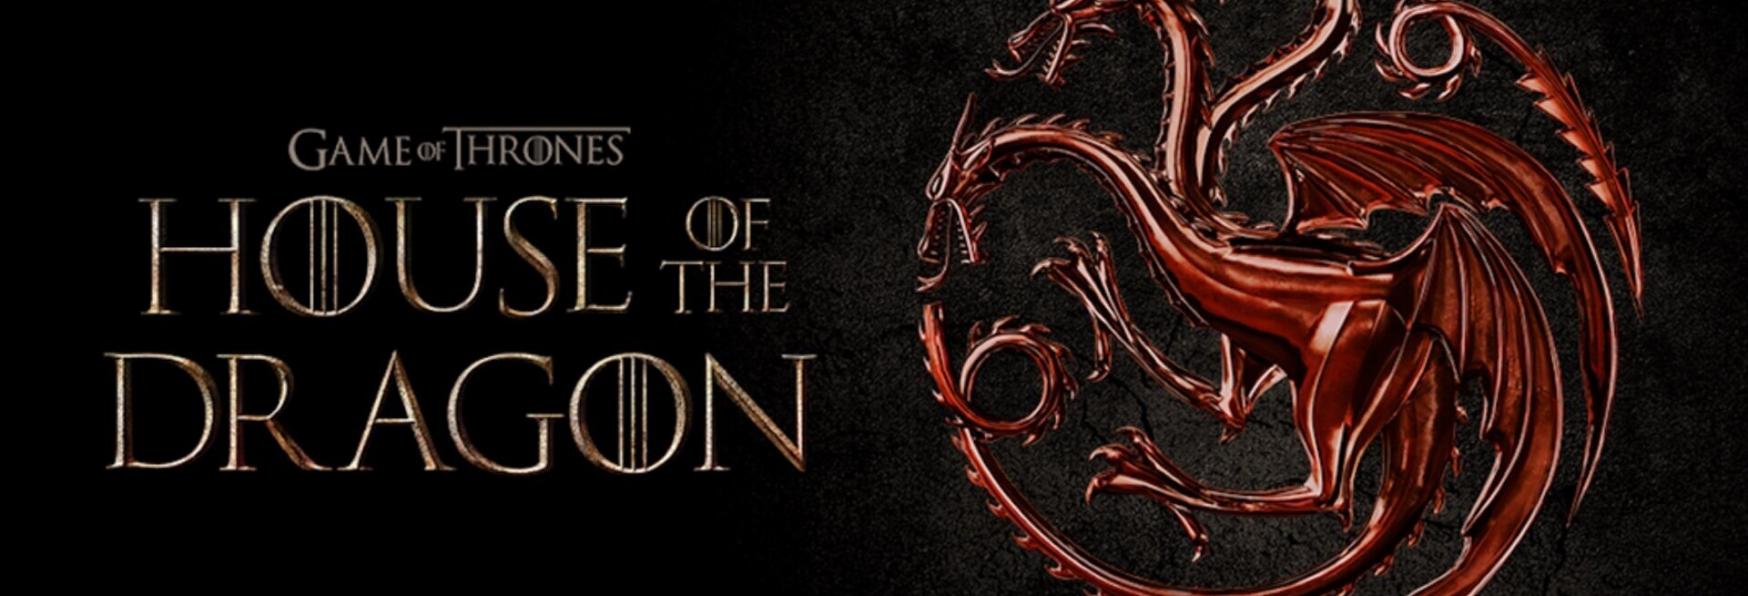 House of the Dragon: HBO condivide alcune nuove Immagini dell'attesa Serie TV Spin-off